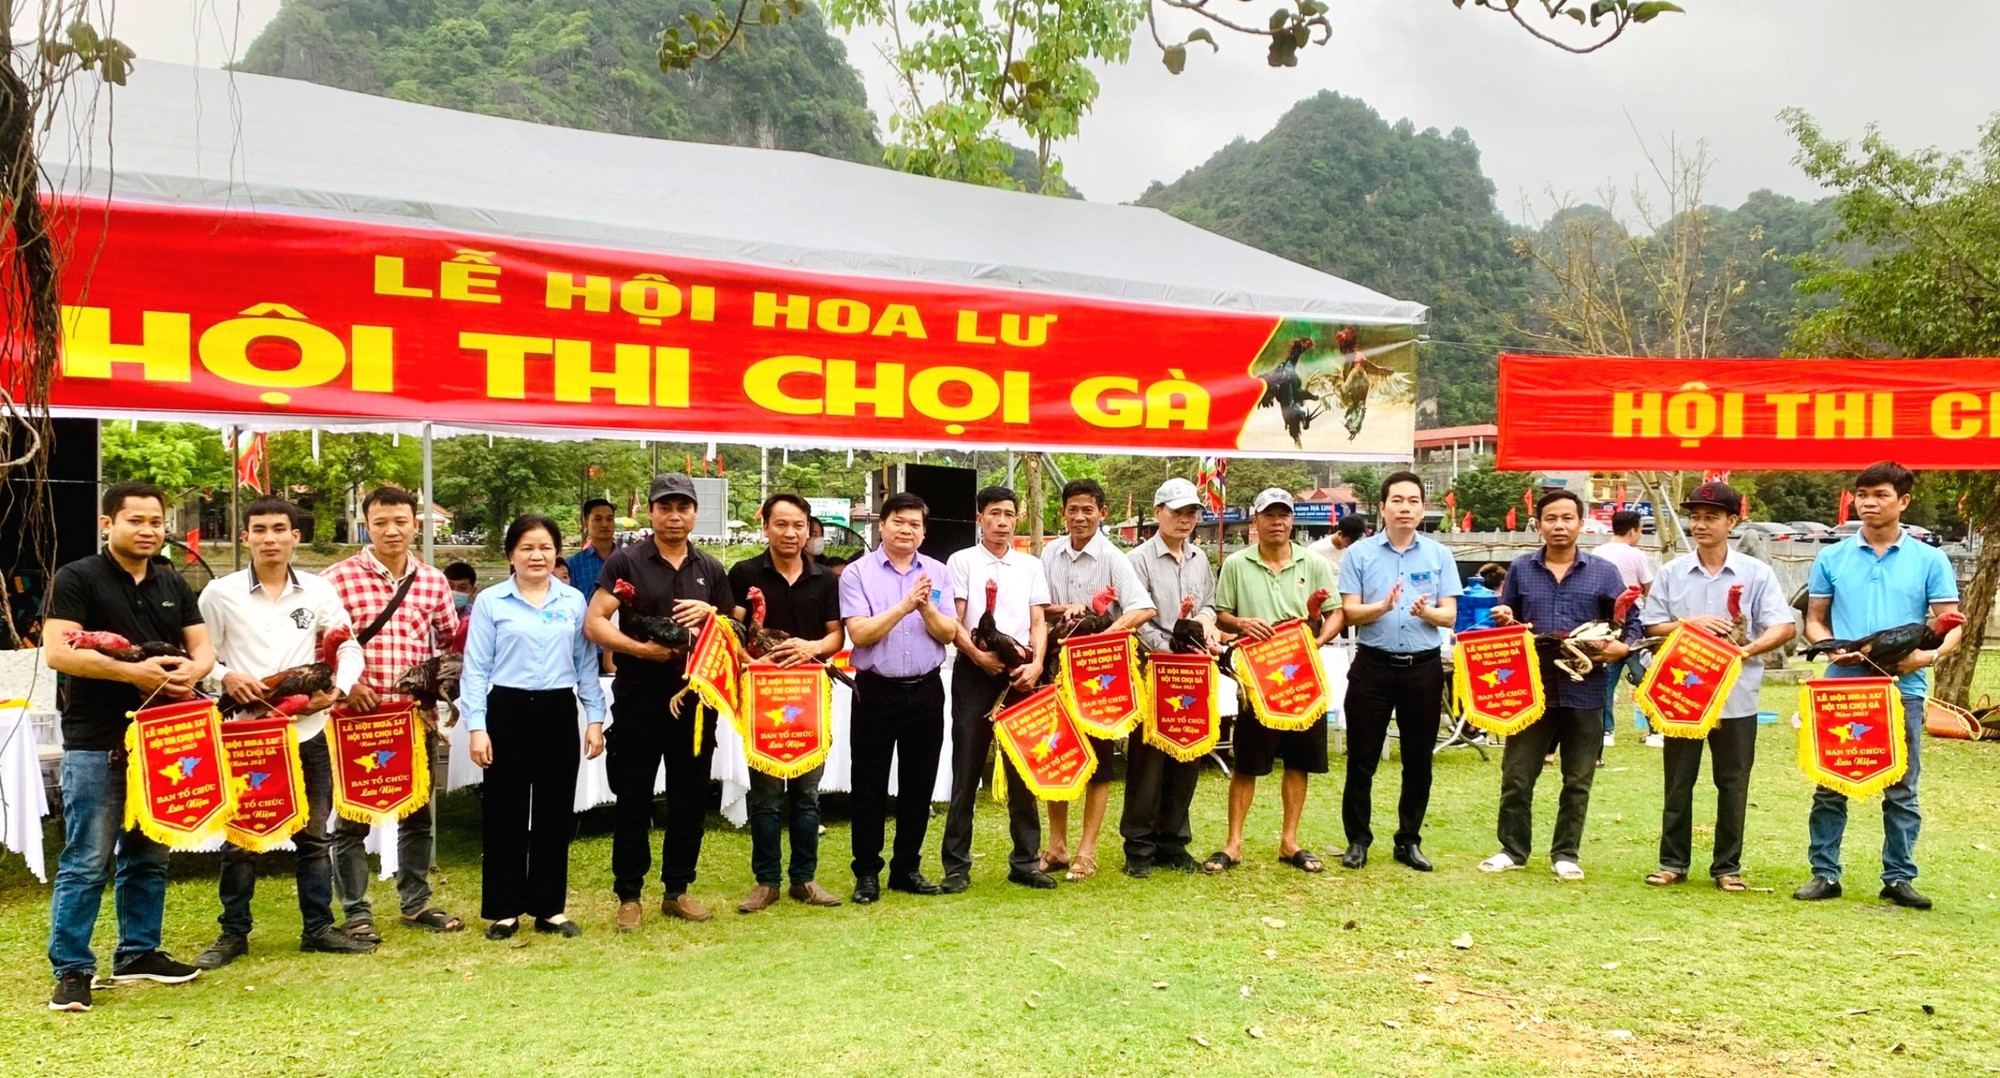 Hội Nông dân tỉnh Ninh Bình tổ chức thi chọi gà tại lễ hội Hoa Lư - Ảnh 1.